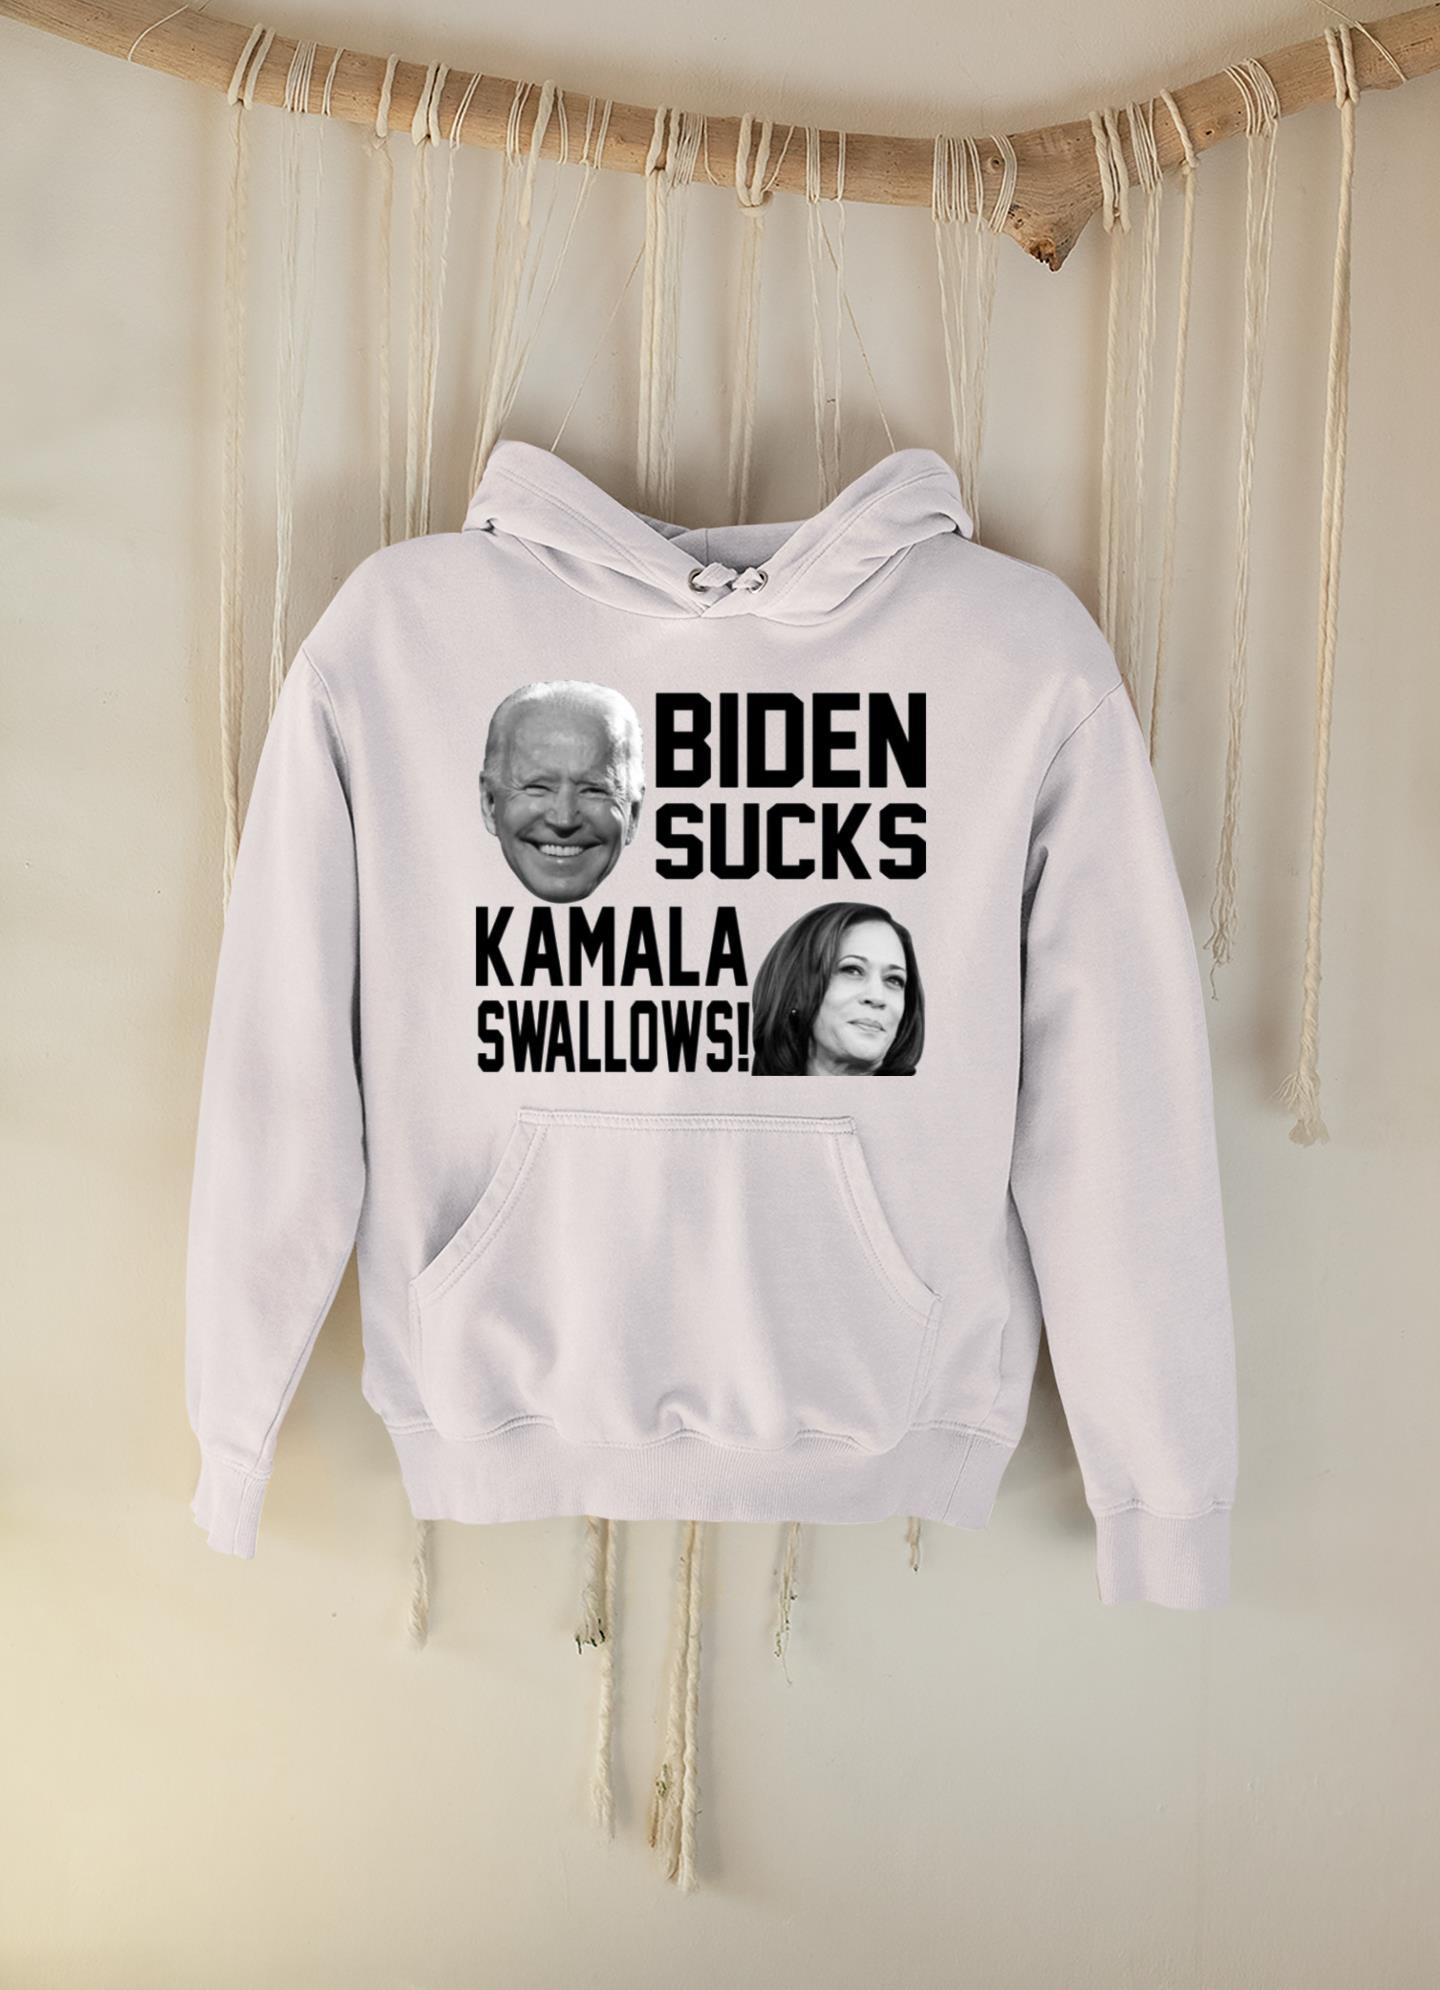 Kamala swallows Biden sucks shirt